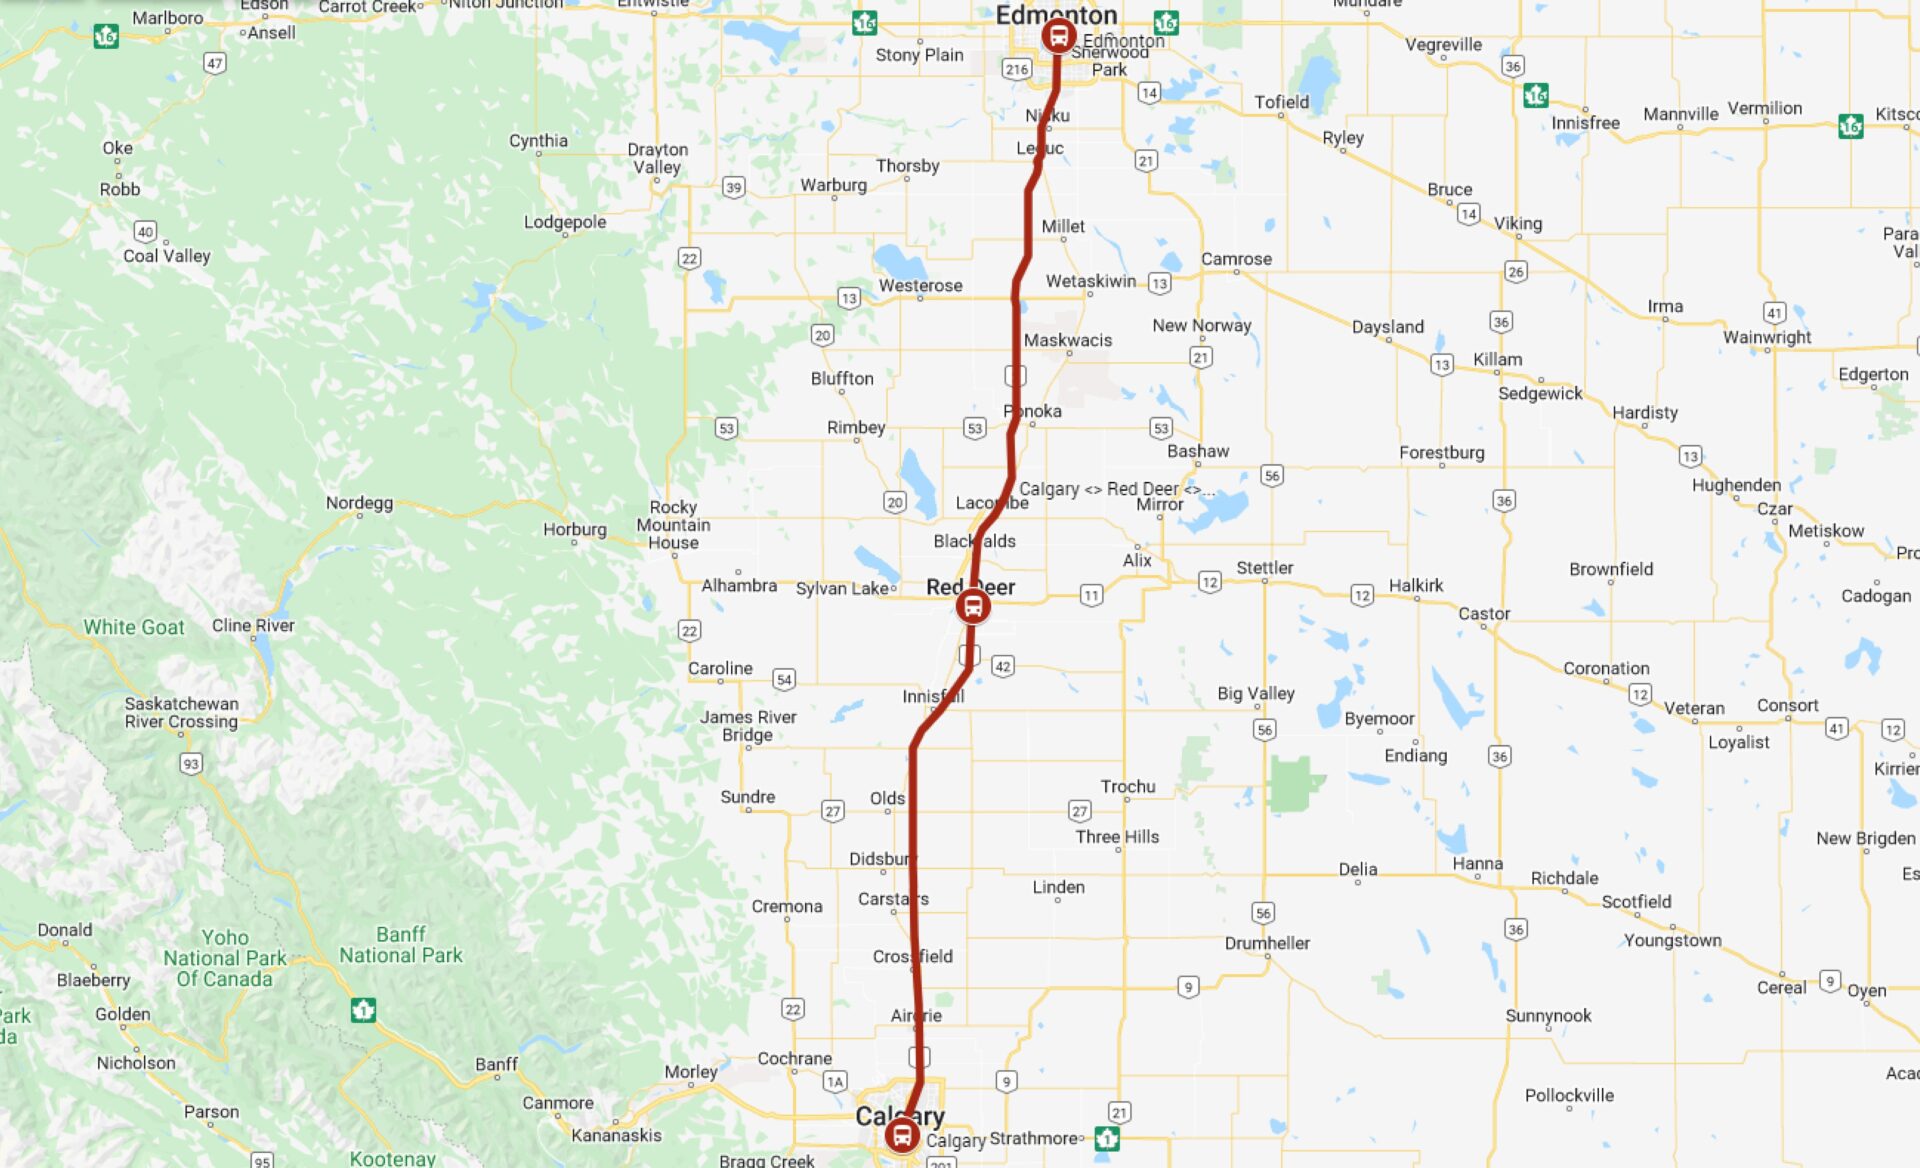 Calgary to Edmonton - Red Arrow